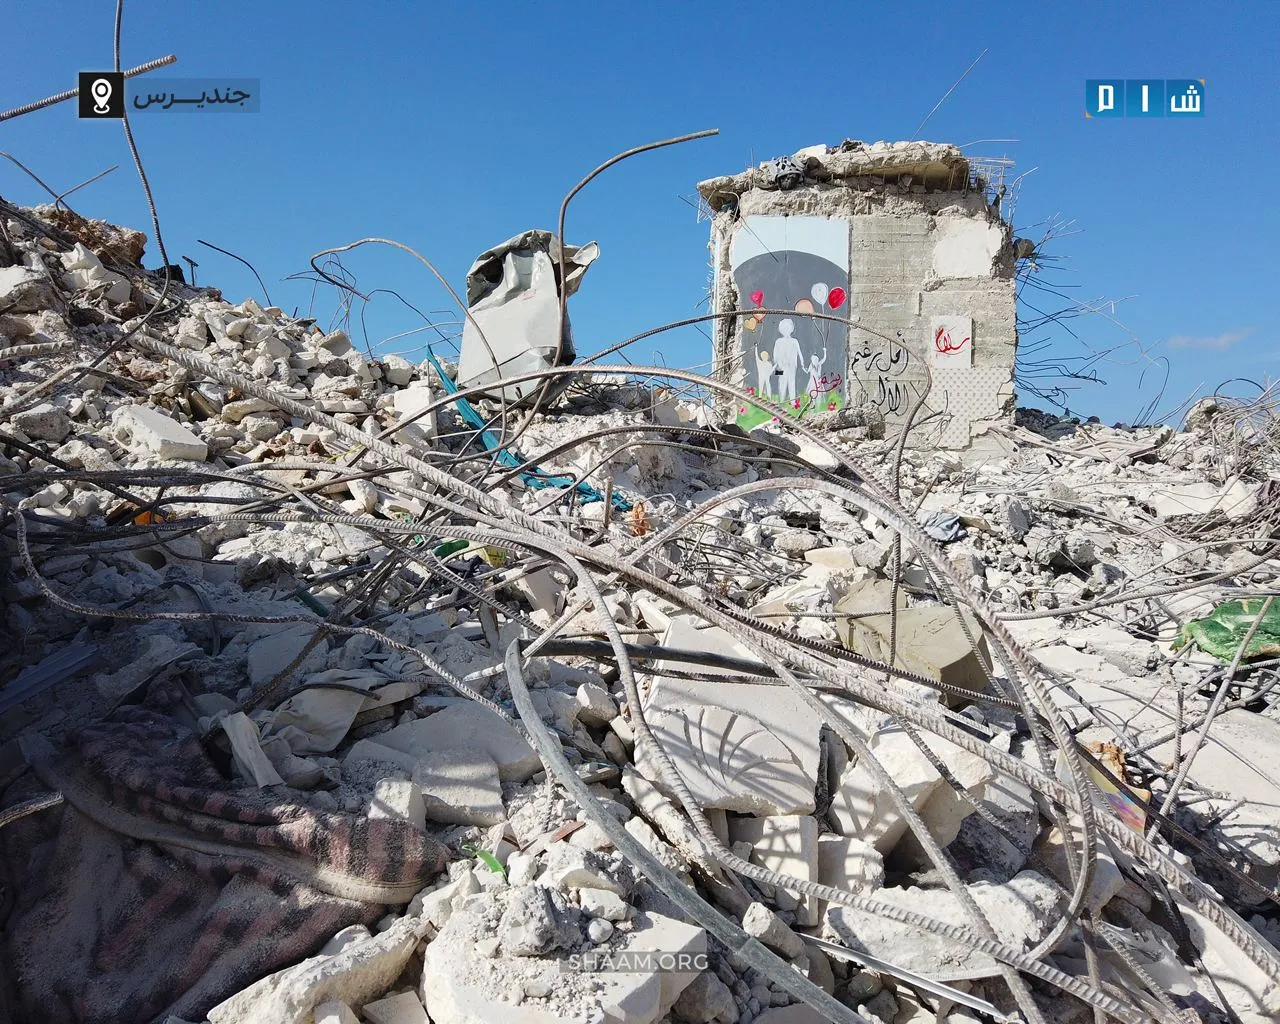 "استجابة سوريا" يُقدم تقريراً تفصيلياً للأضرار التي خلفها الزلزال شمالي سوريا